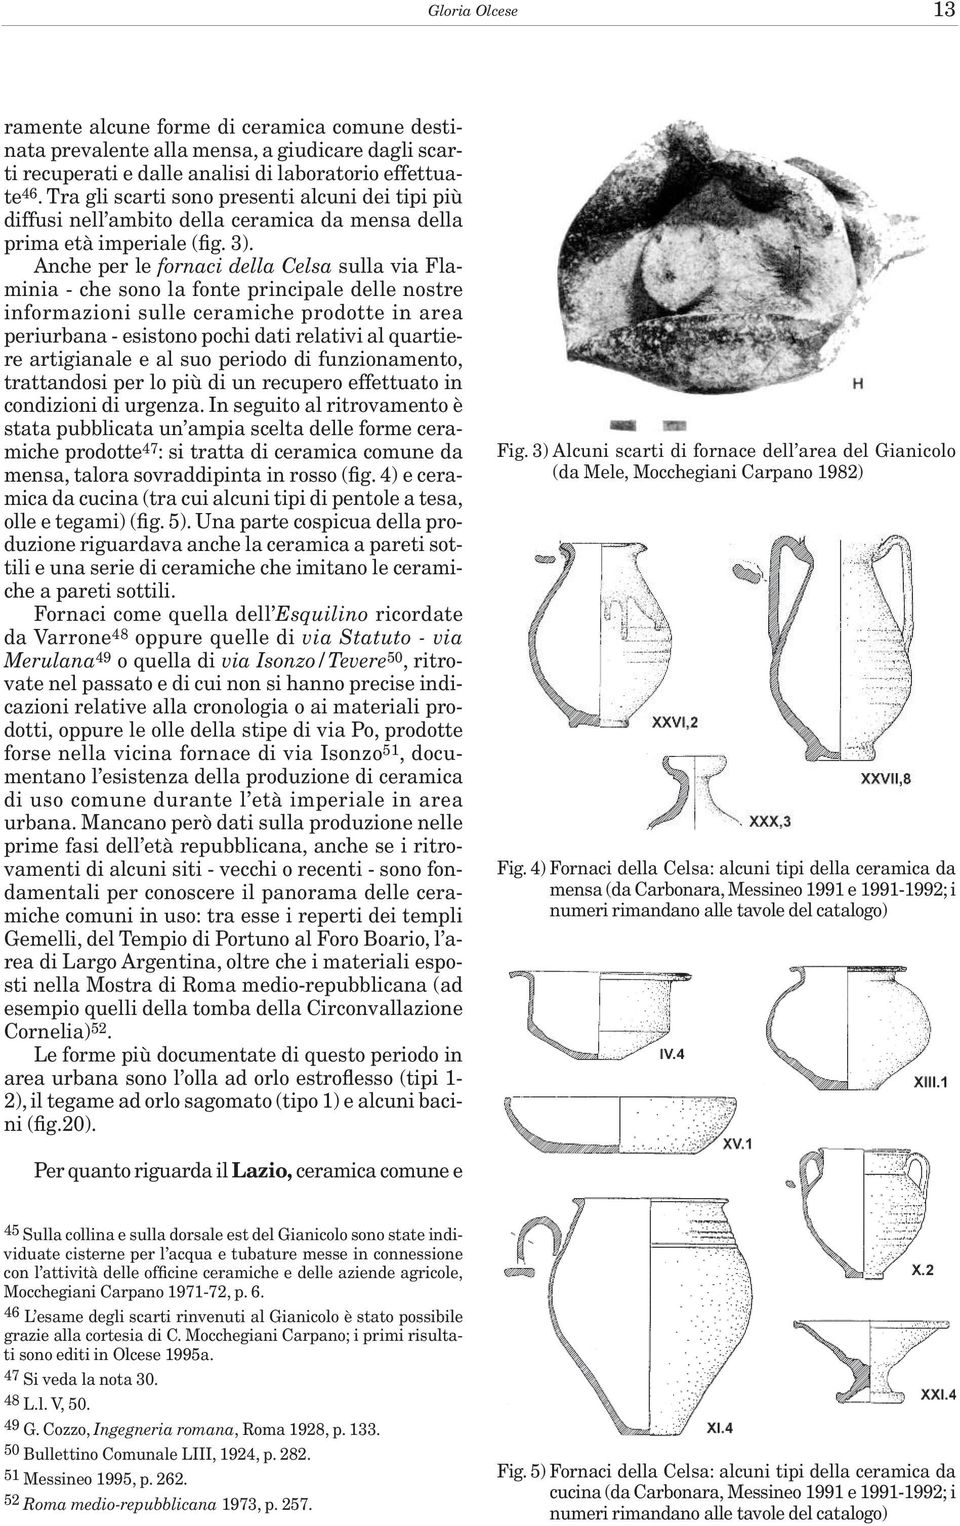 Anche per le fornaci della Celsa sulla via Flaminia - che sono la fonte principale delle nostre informazioni sulle ceramiche prodotte in area periurbana - esistono pochi dati relativi al quartiere